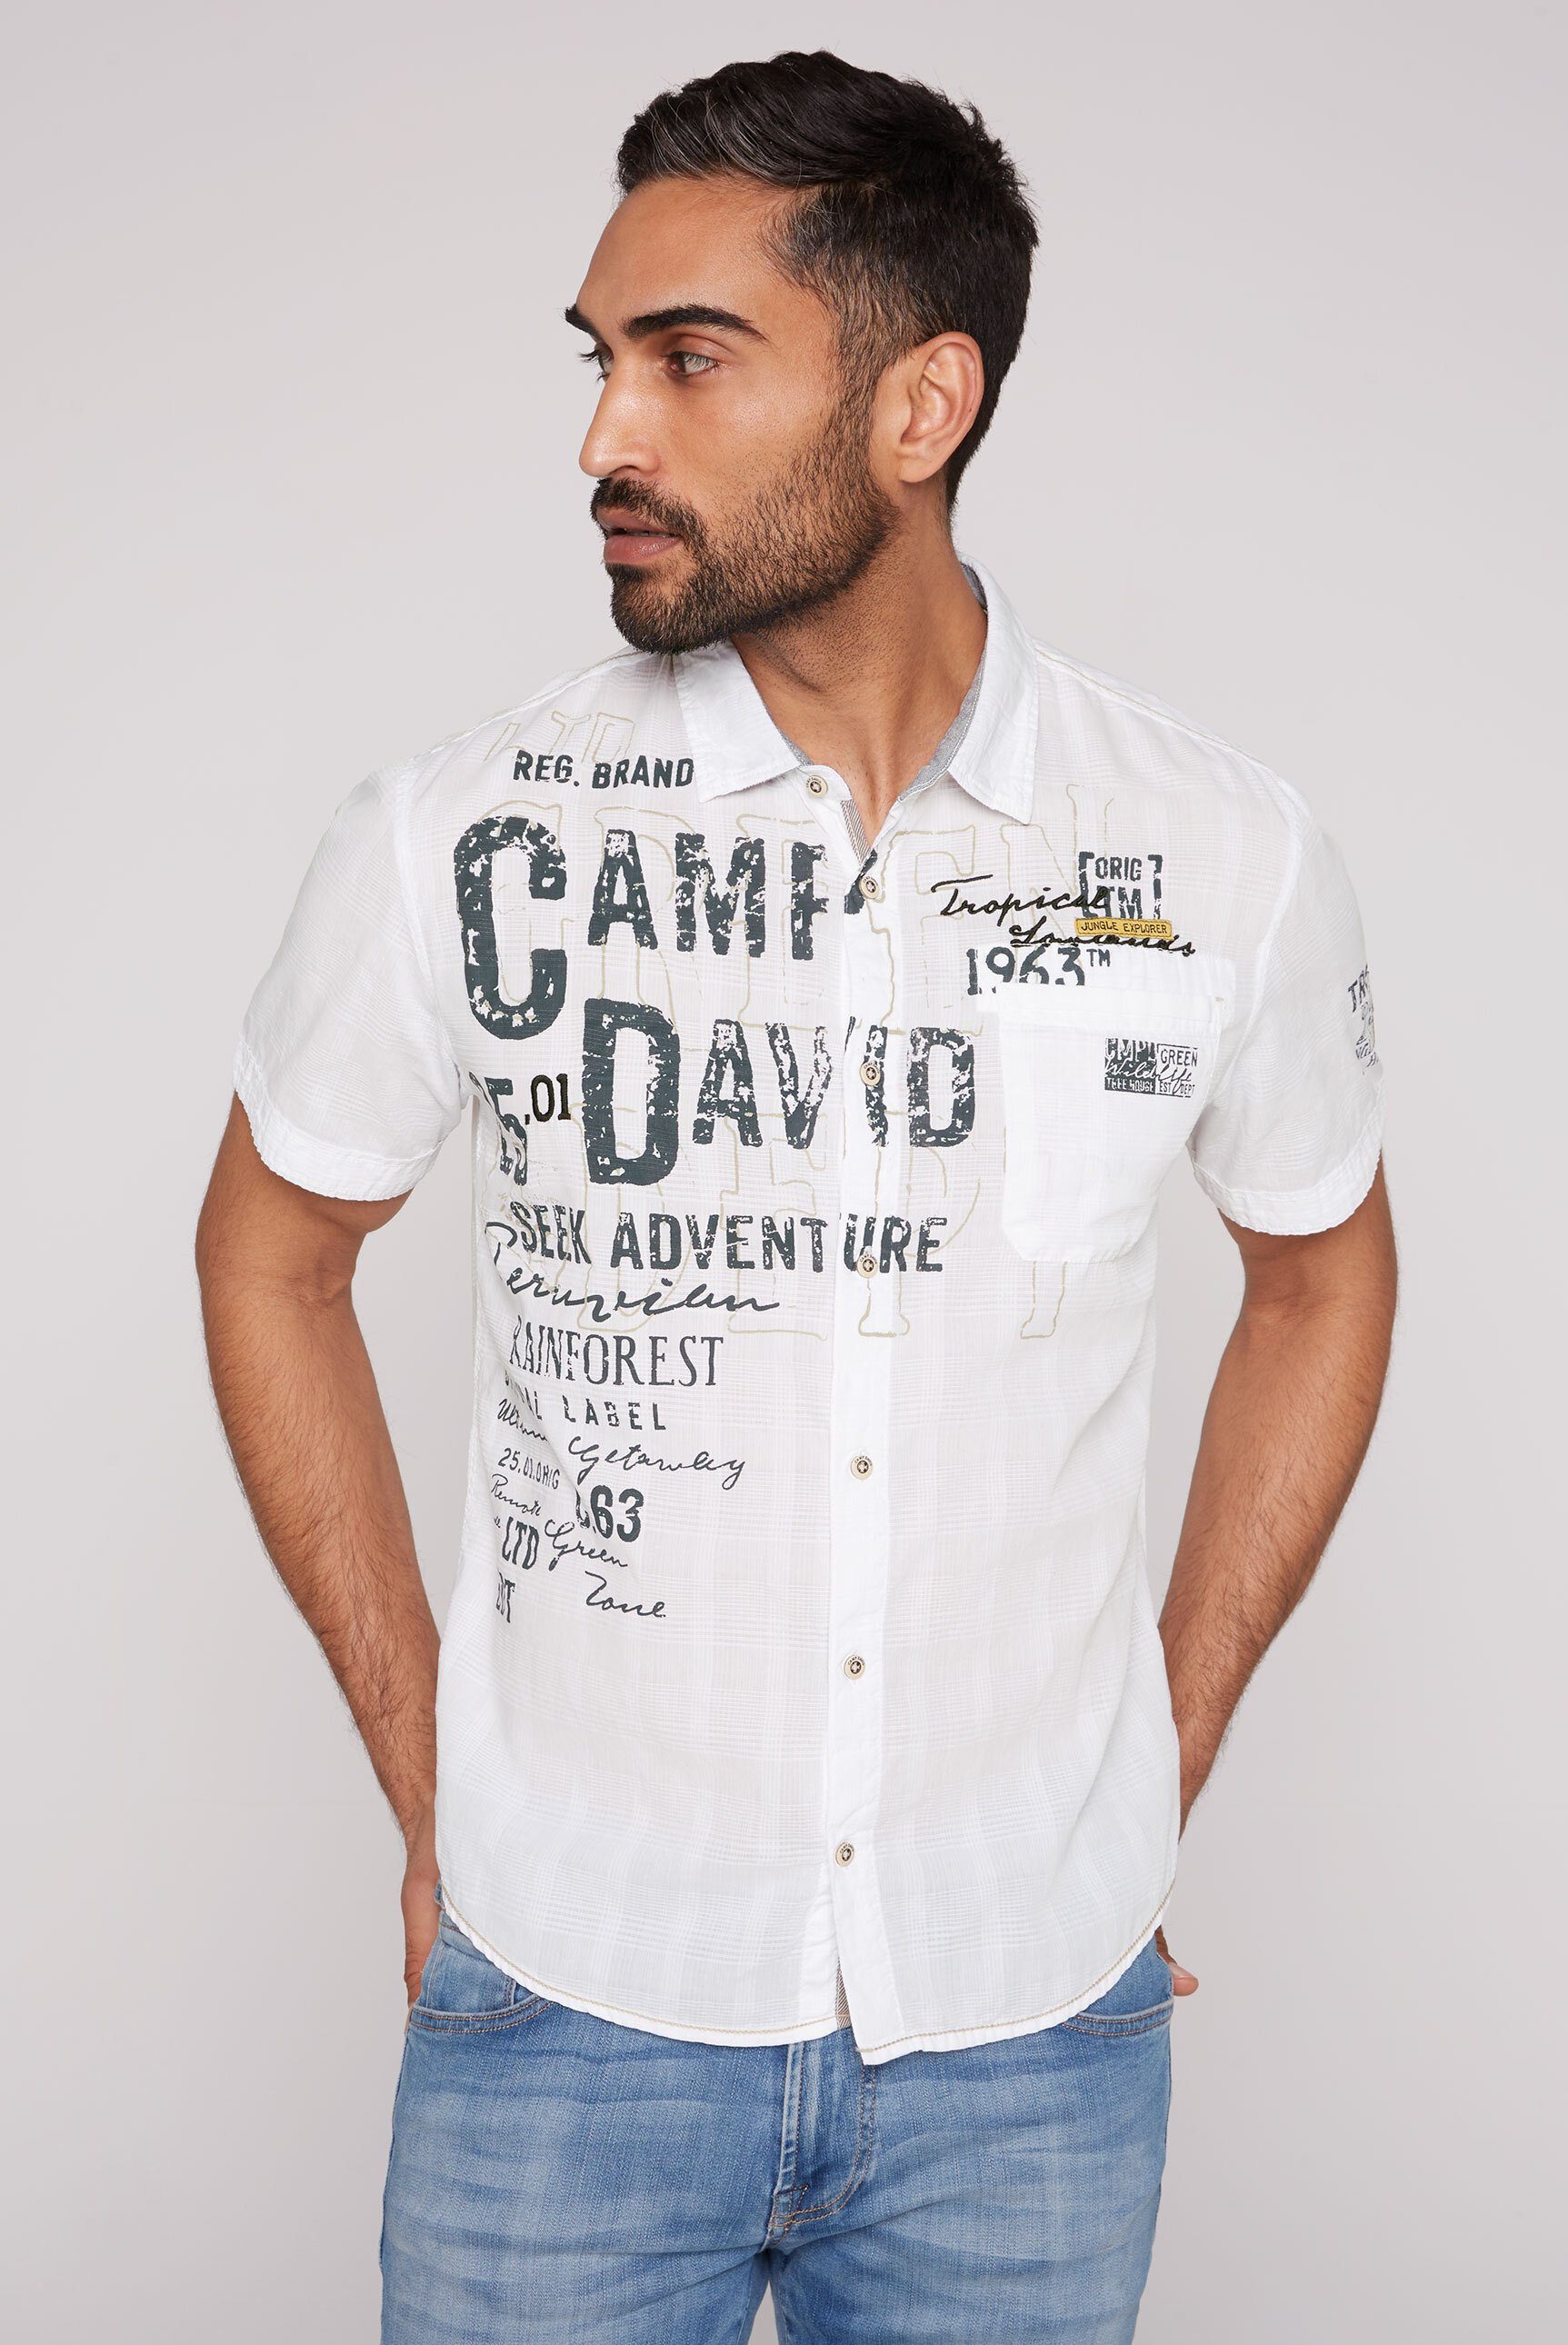 Camp David Herren Hemden online kaufen | OTTO